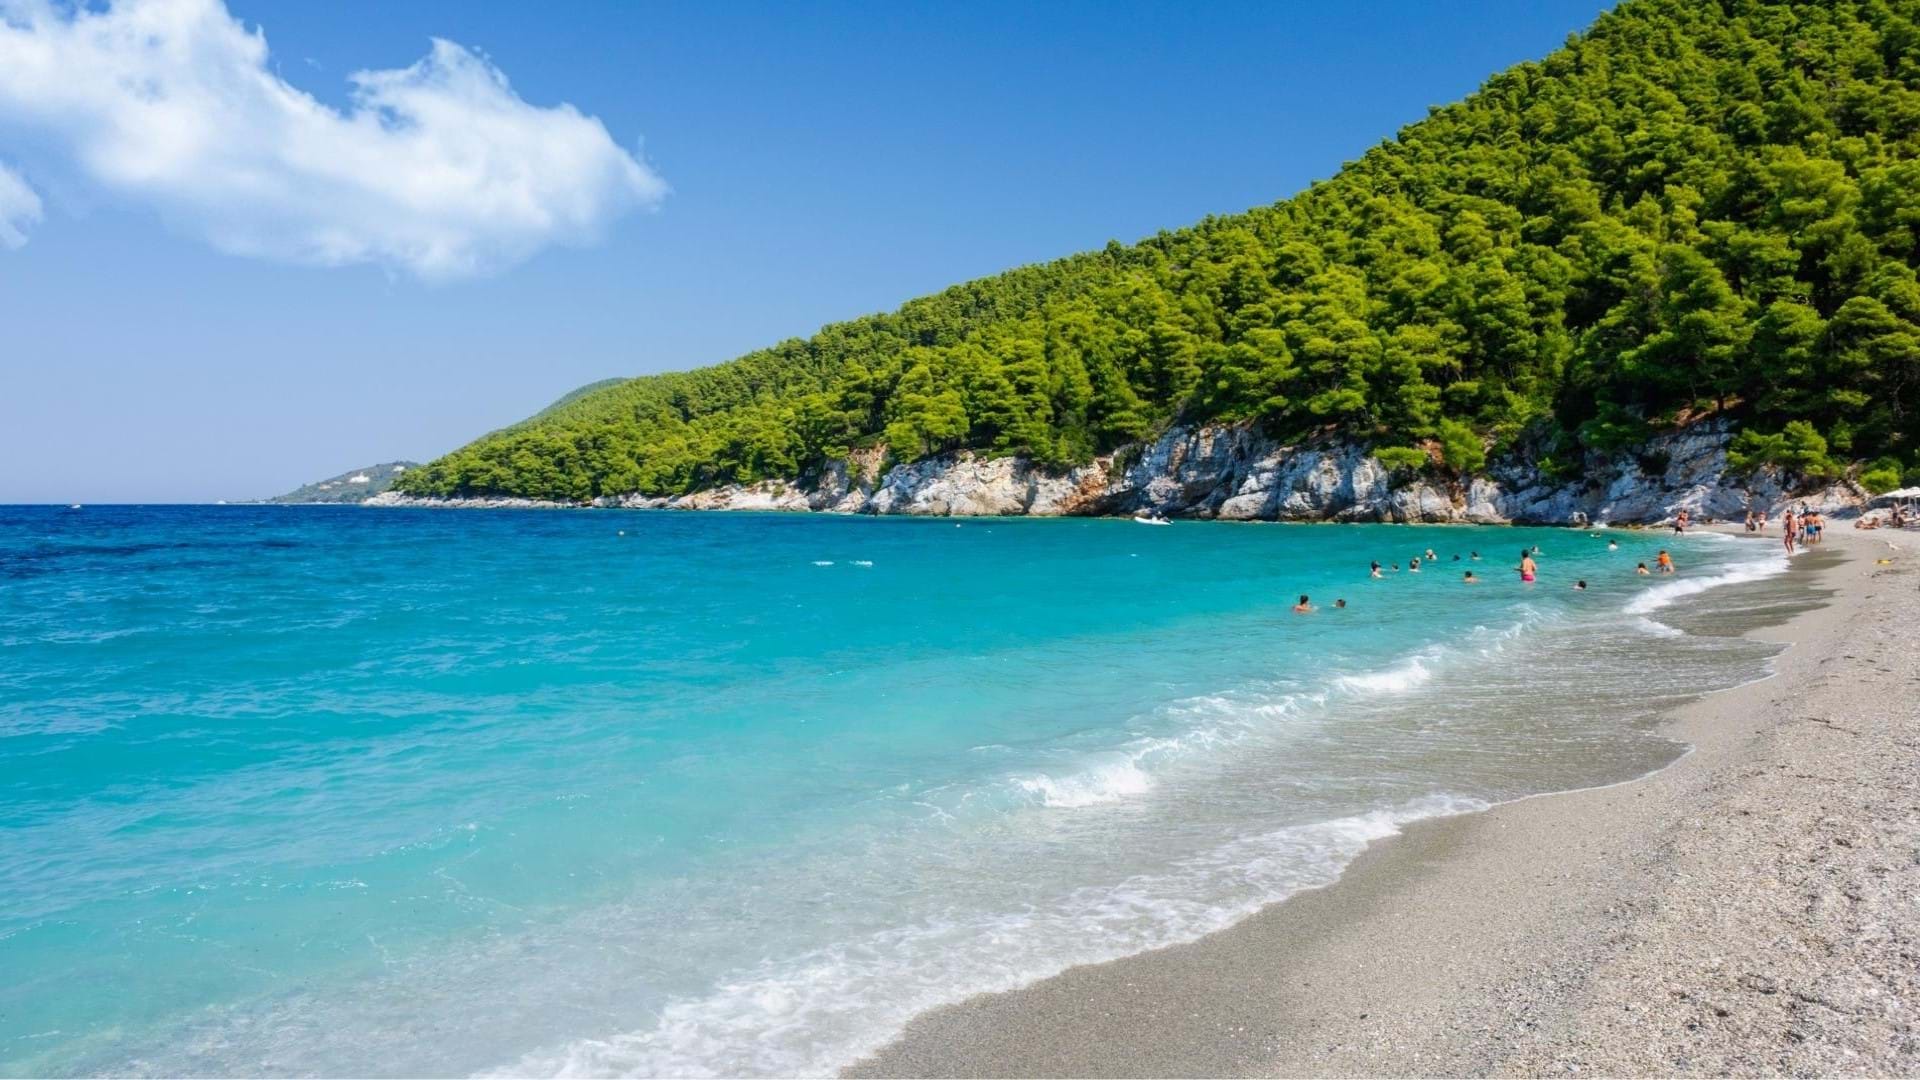 Plaže na Skopelosu, tirkizno more, prelepa obala i sitan pesak na plažama. Zelenilo borova na brdima izndad plaže.